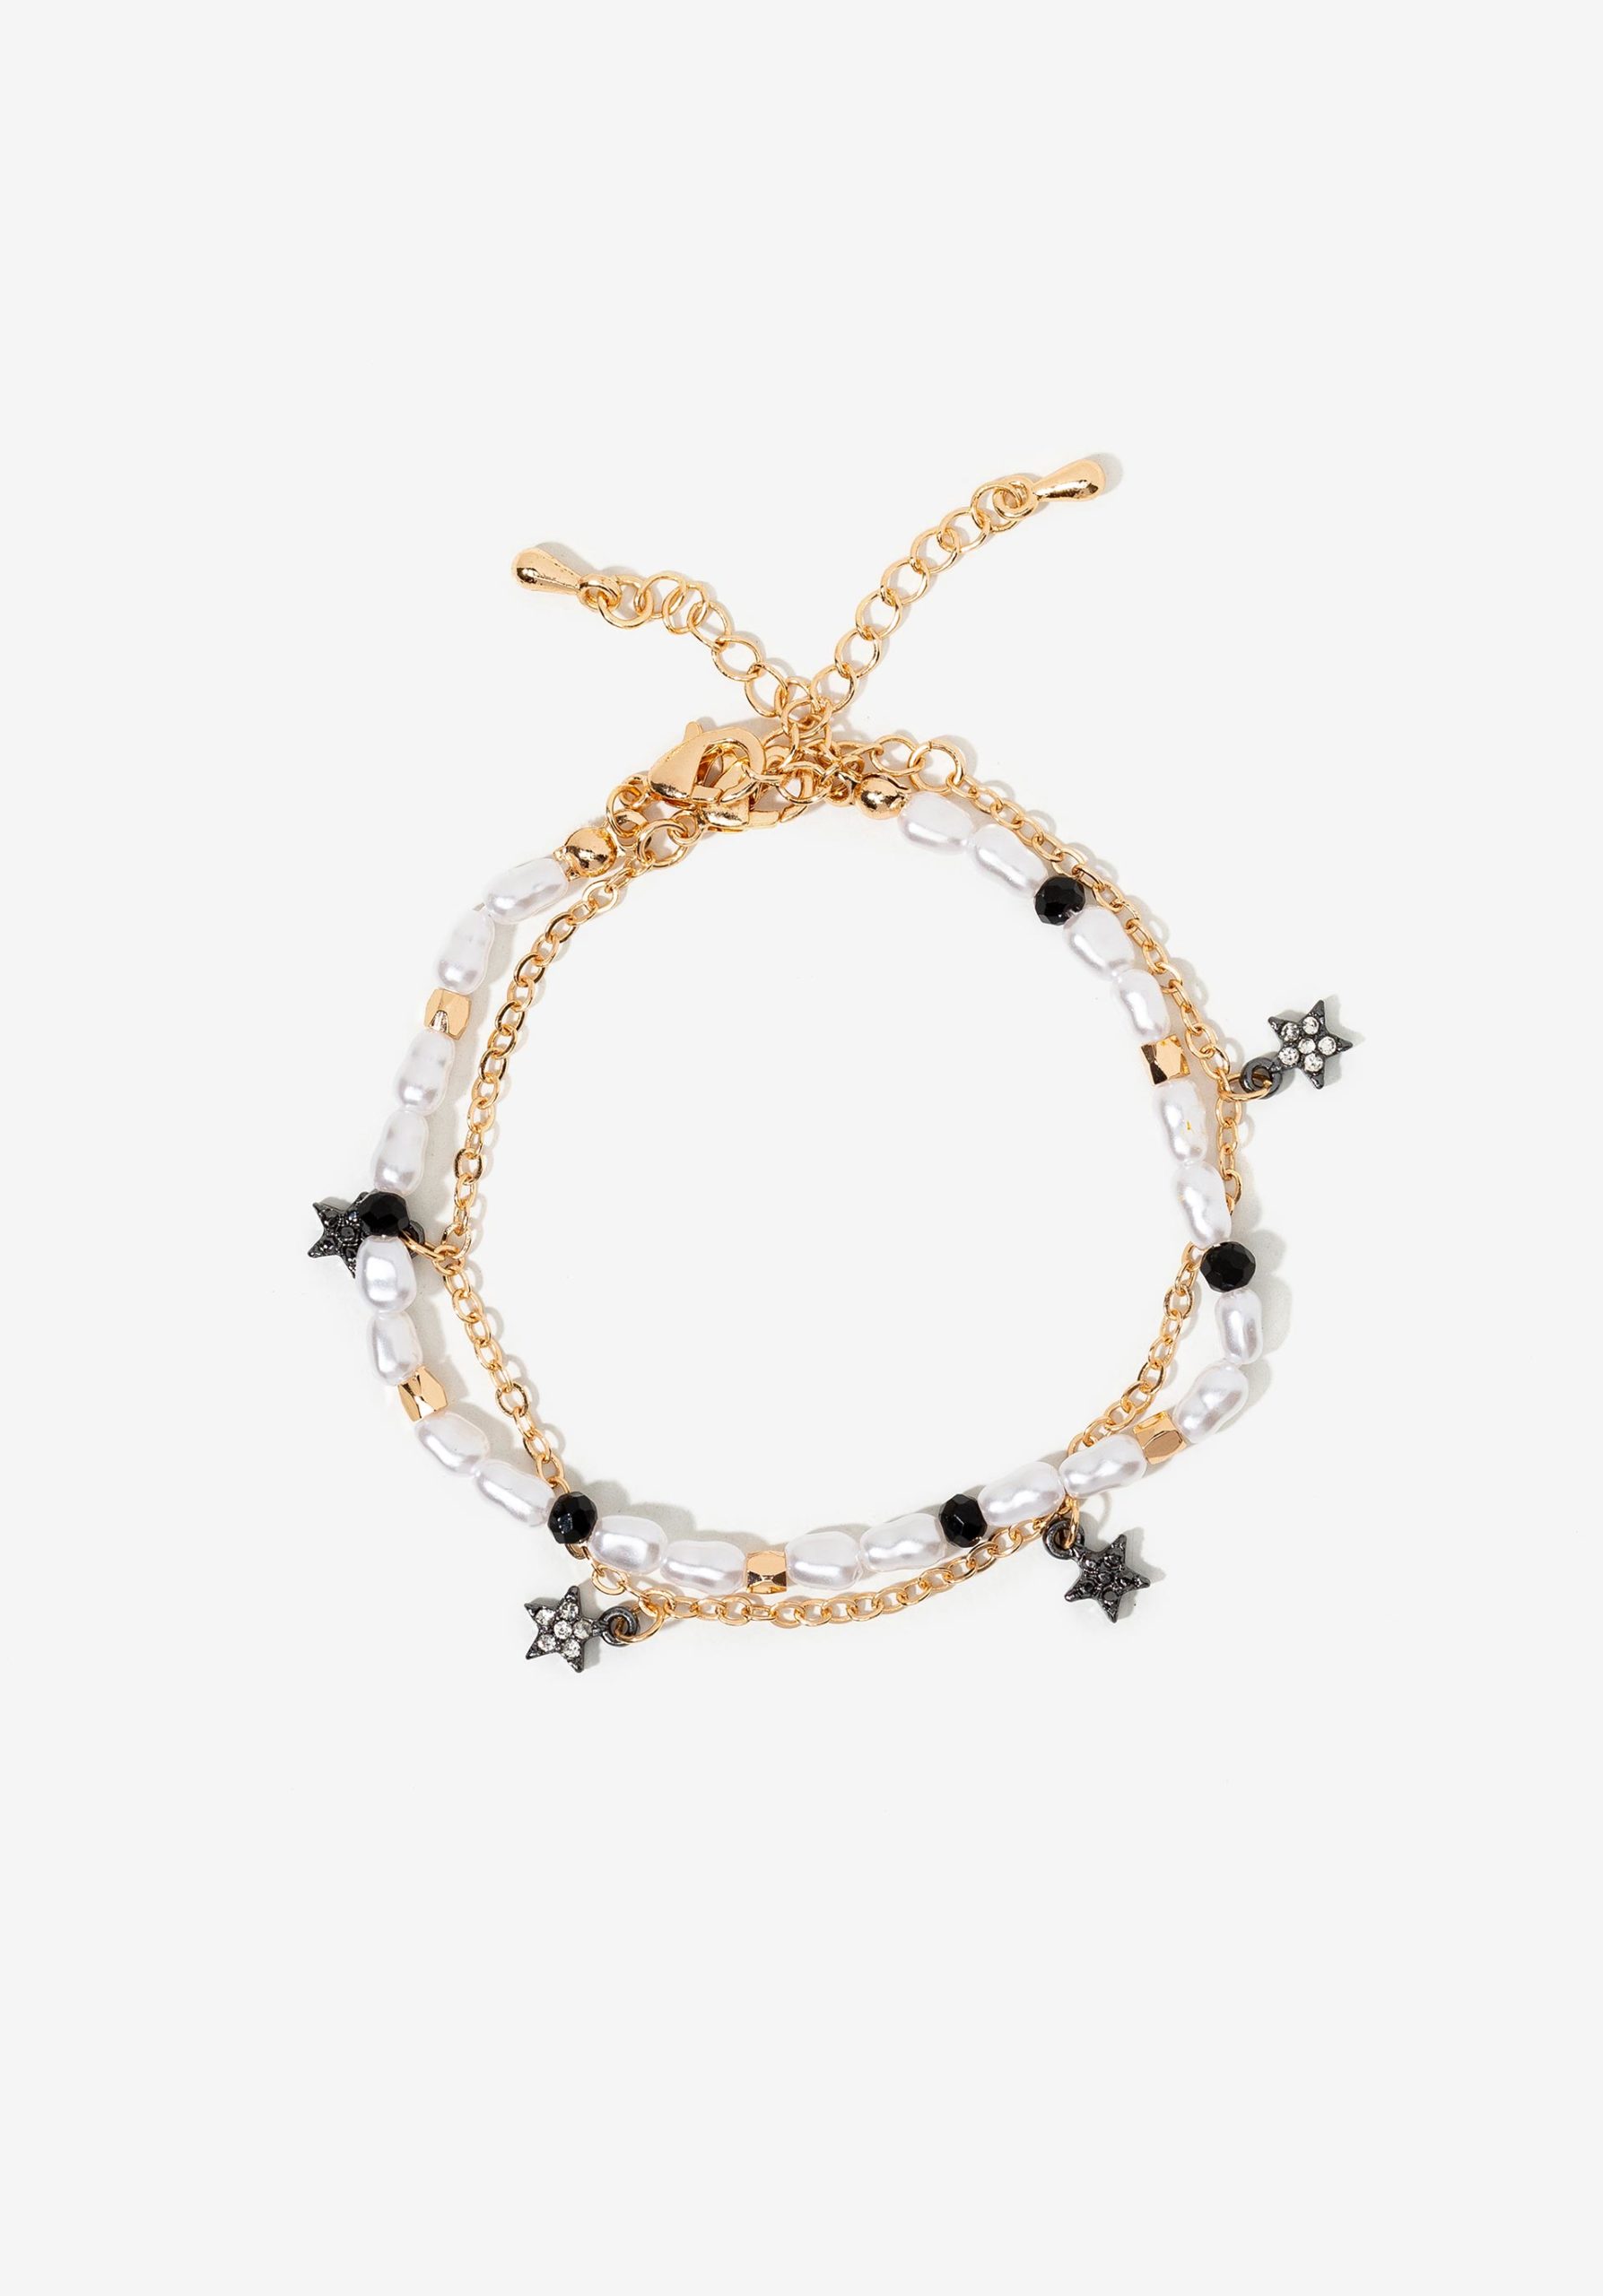 Pack de dos pulseras de perlas y estrellas, modelo 71006877 de Vilanova.